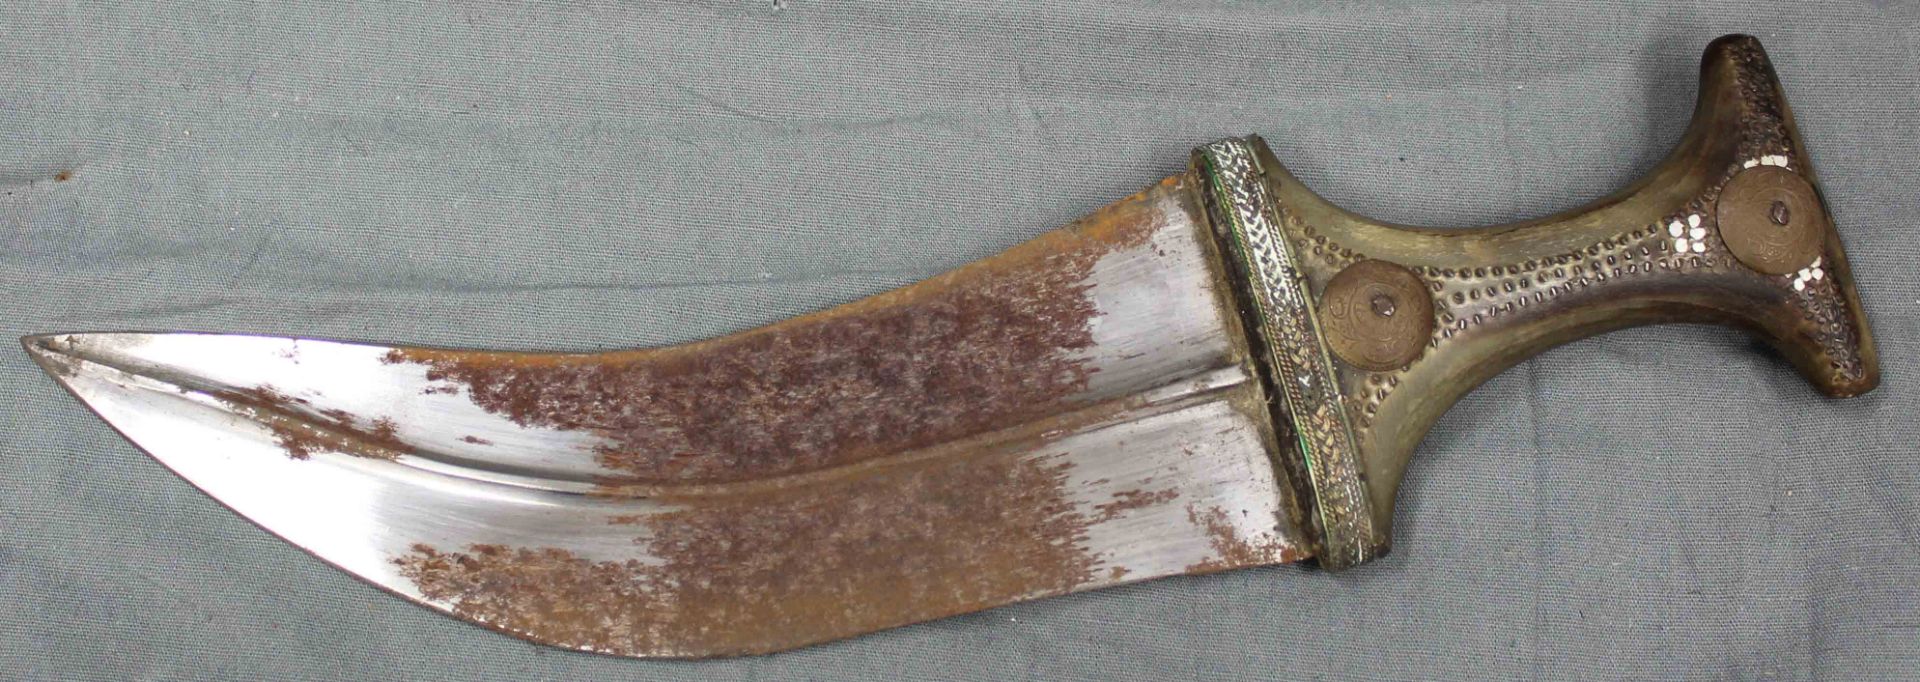 Jambia curved dagger. Arabia. Antique, around 150-250 years old. - Bild 9 aus 10